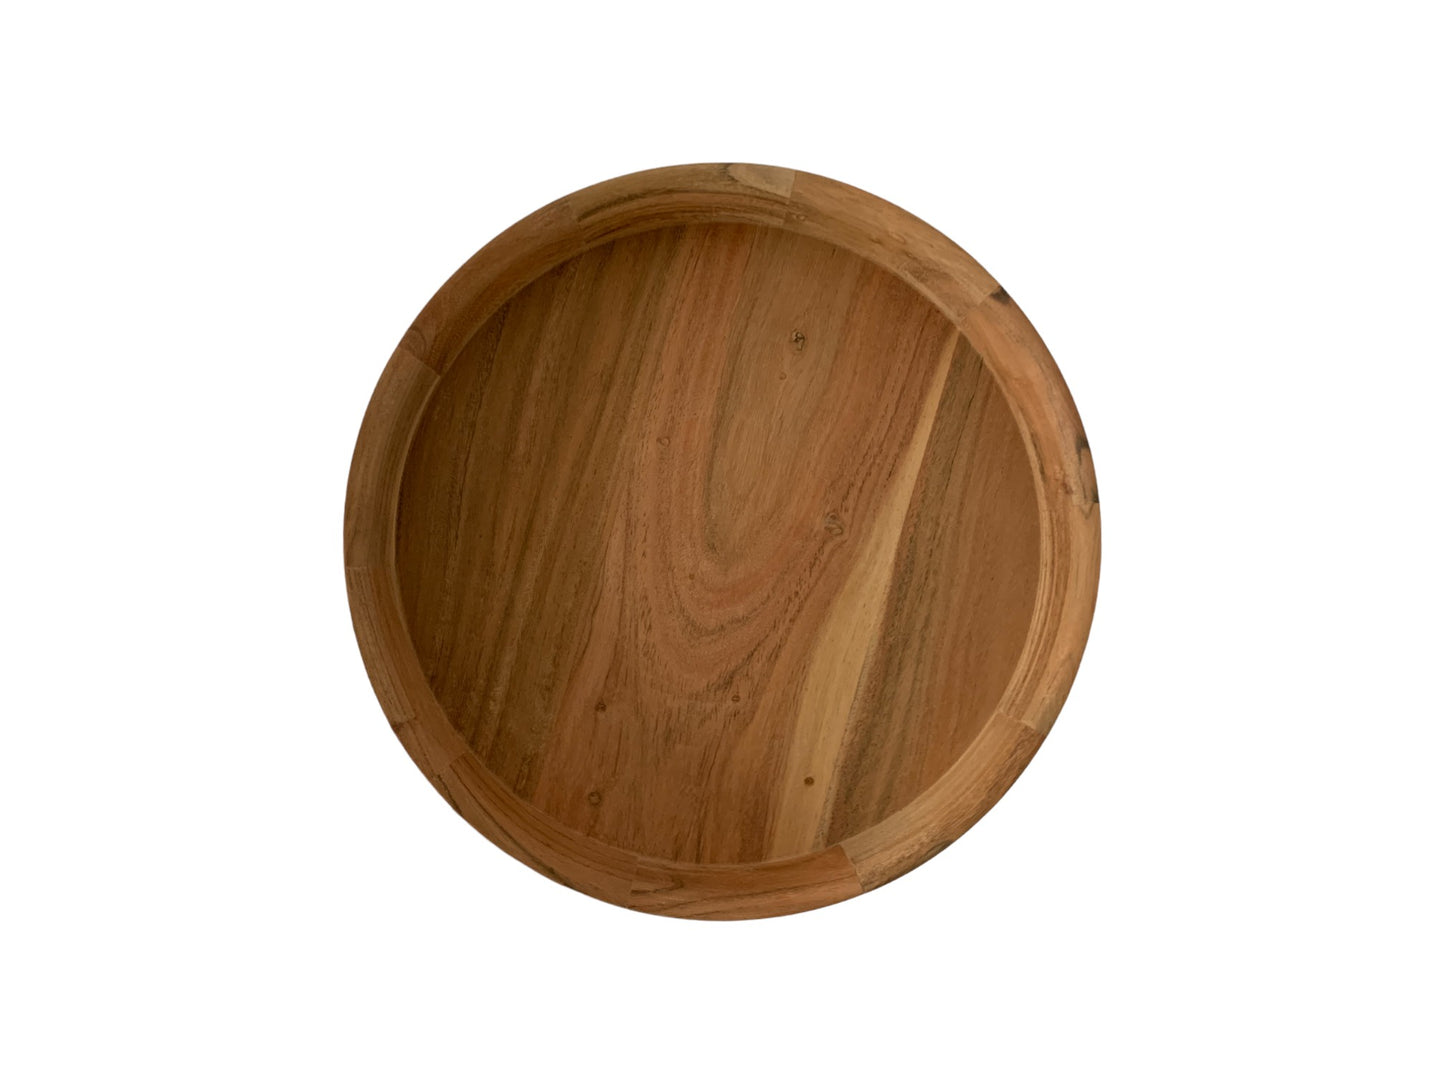 schaal acaciahout diameter 35cm met een brede opstaande rand van 6cm in naturel hout kleur